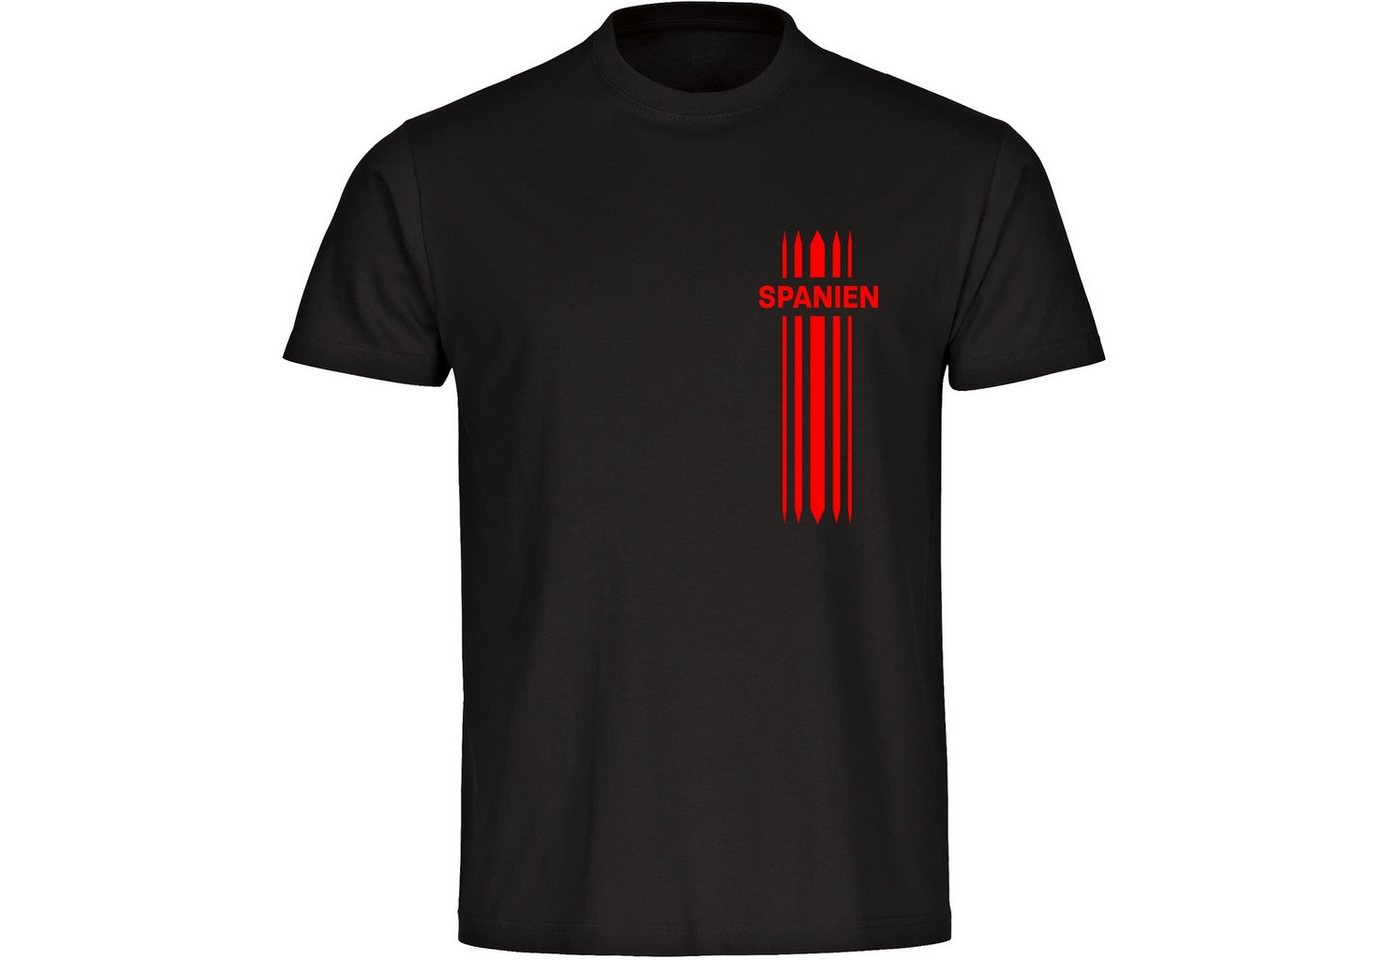 multifanshop T-Shirt Herren Spanien - Streifen - Männer von multifanshop